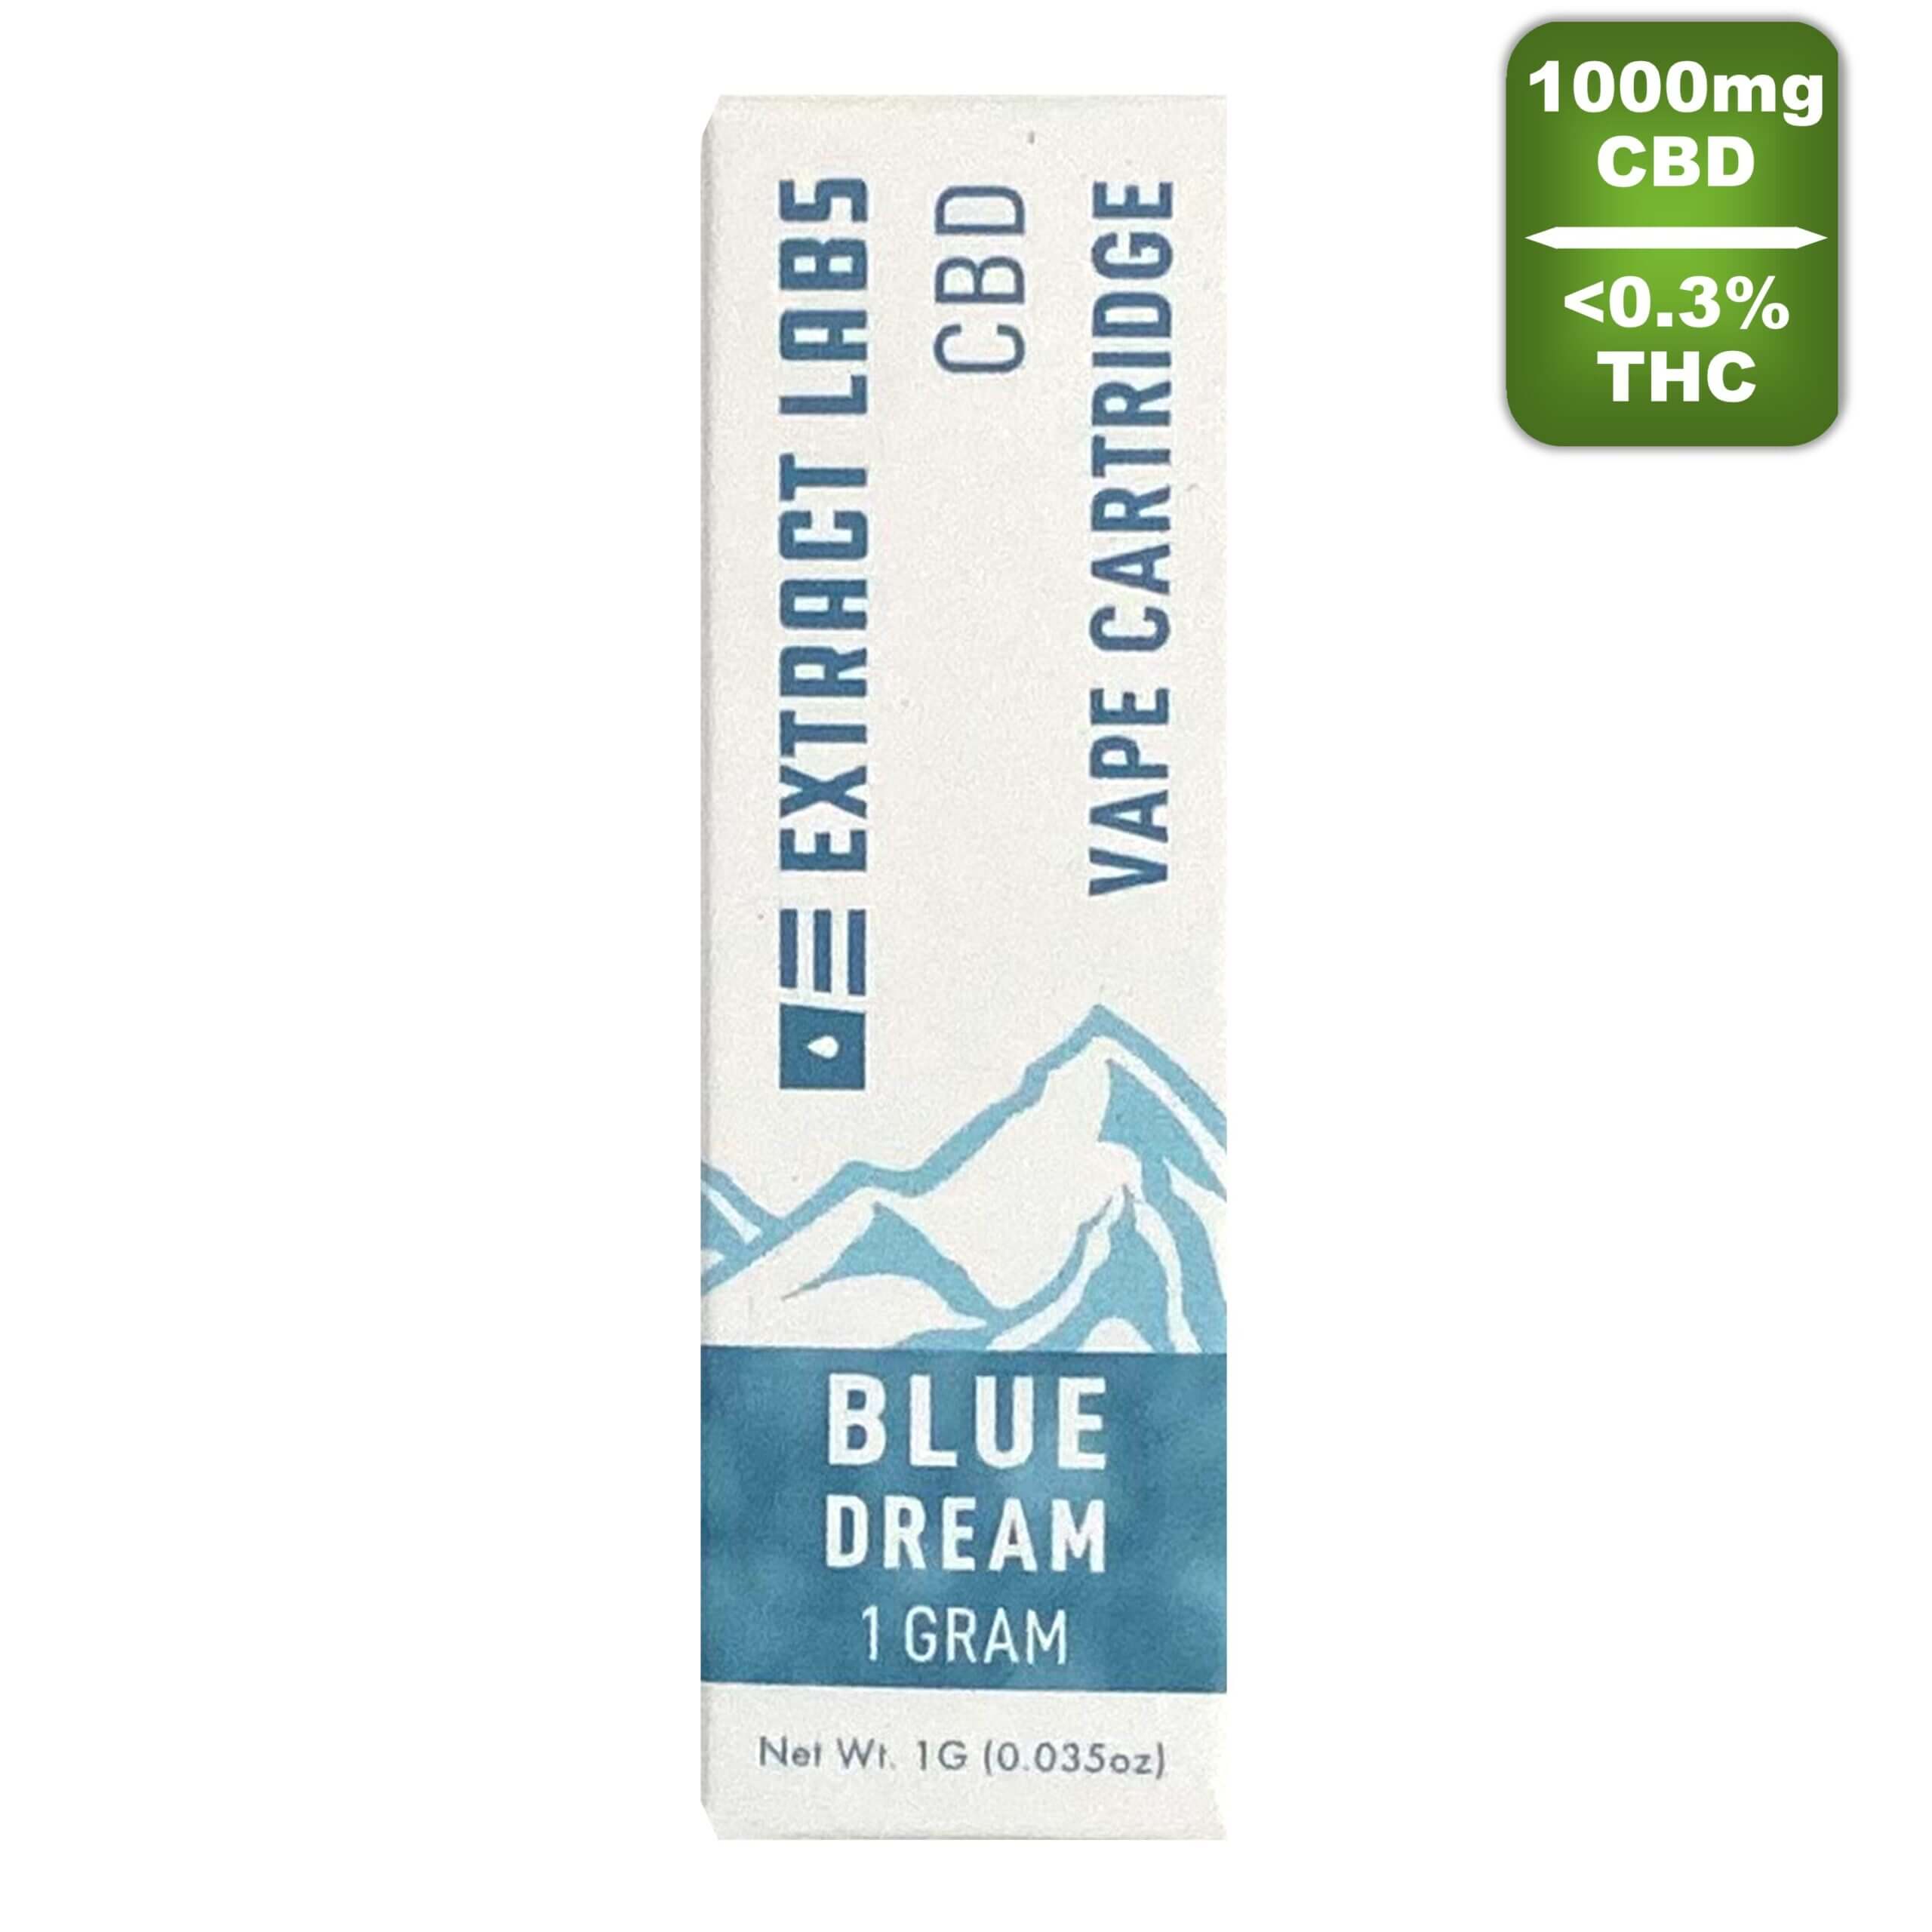 Extract Labs - Blue Dream Vape cartridge CBD + THC